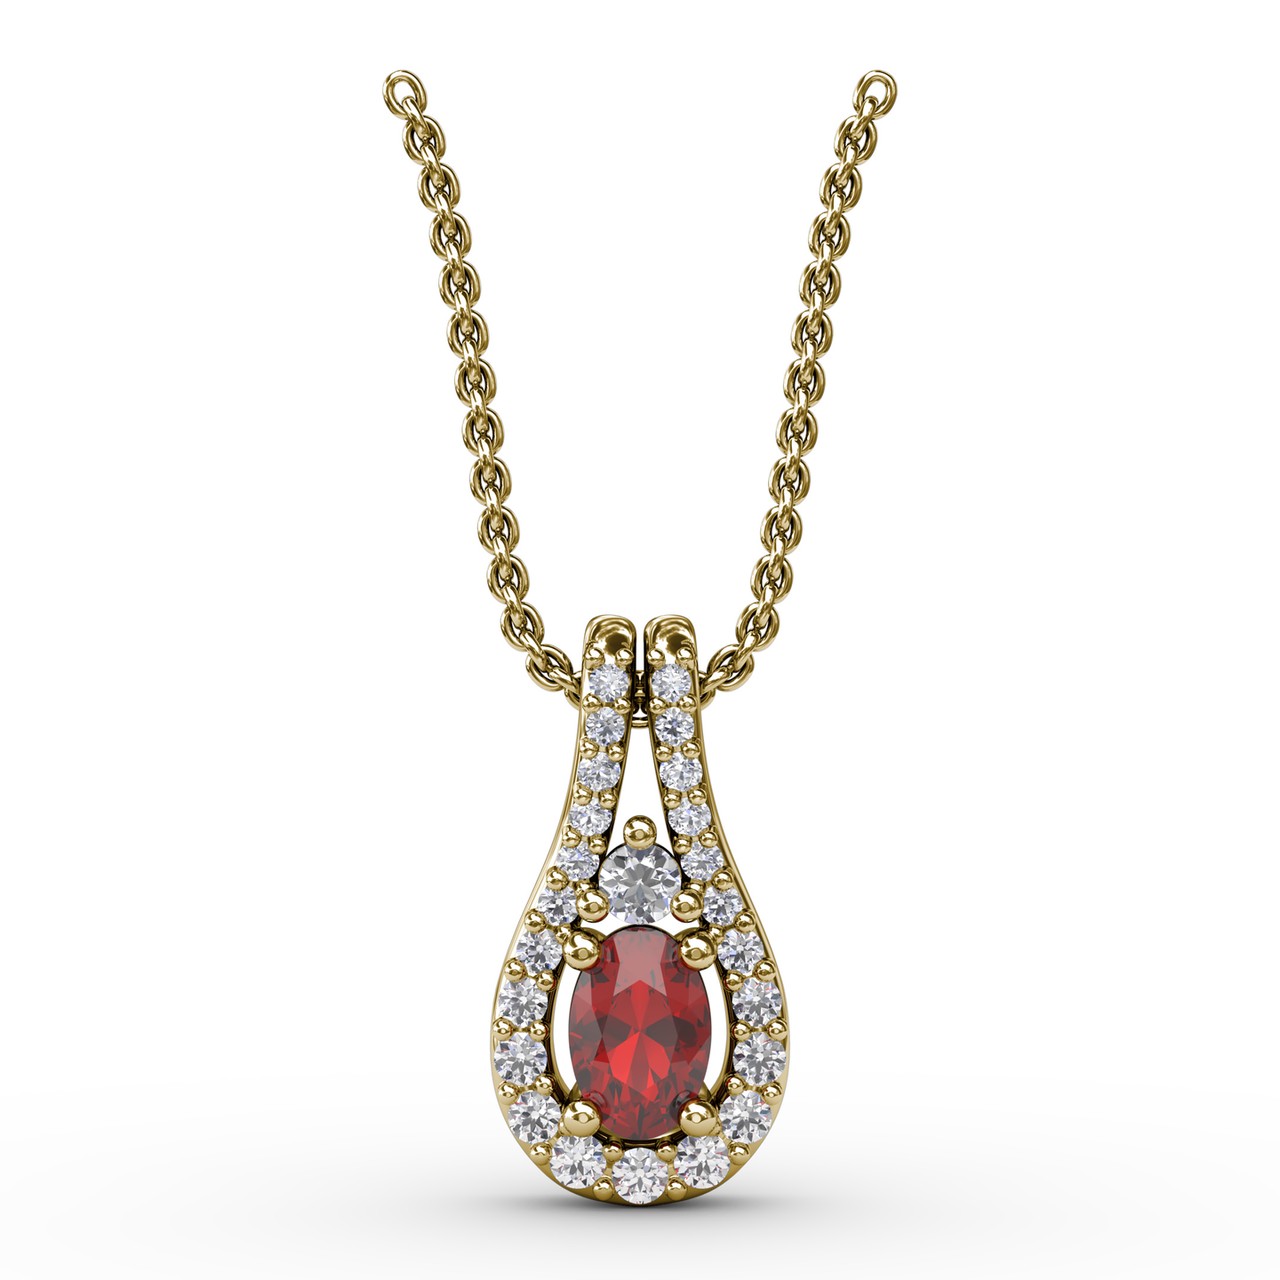 Margaret Solow Jewelry | Teardrop Ruby + 18k Gold Drop Necklace |  Firecracker